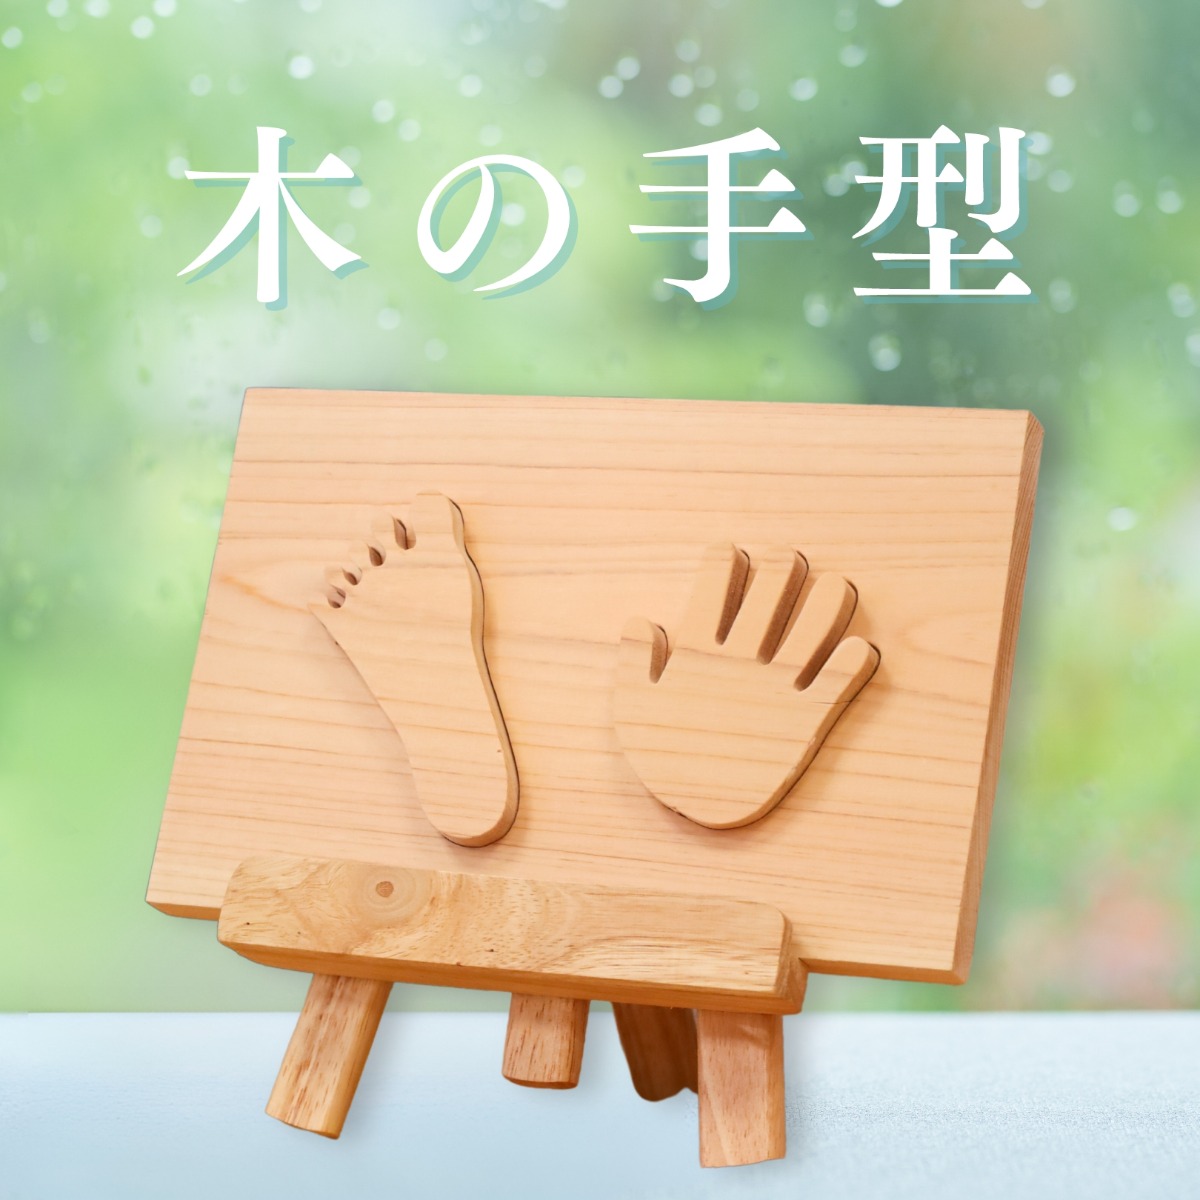 【徳島イベント情報】徳島木のおもちゃ美術館【6月】